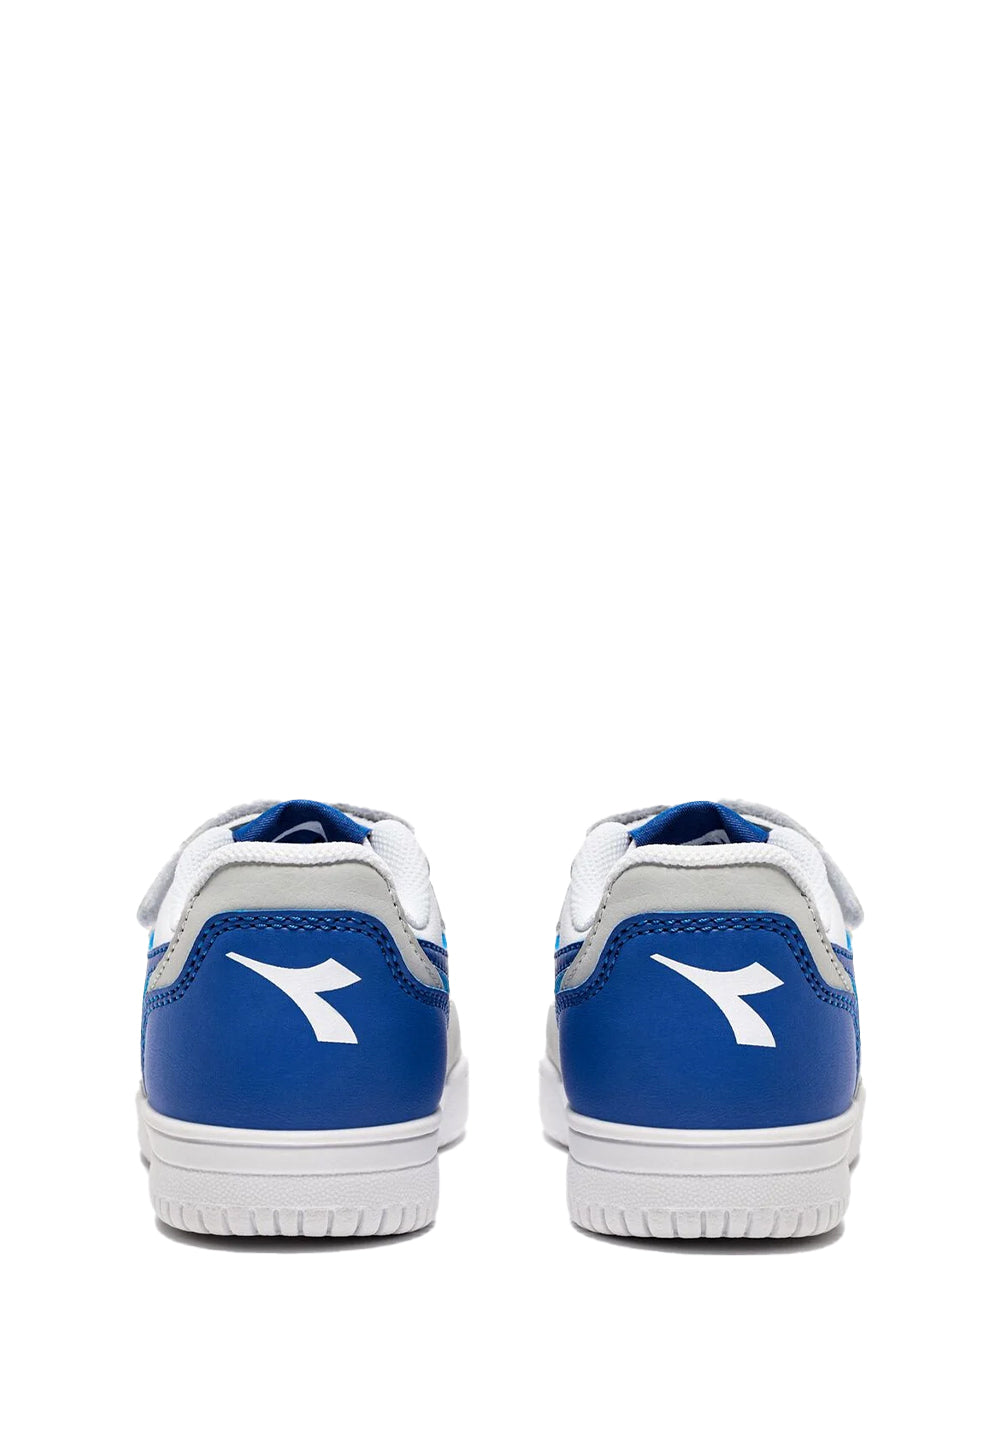 Weiß-blaue Schuhe für Neugeborene